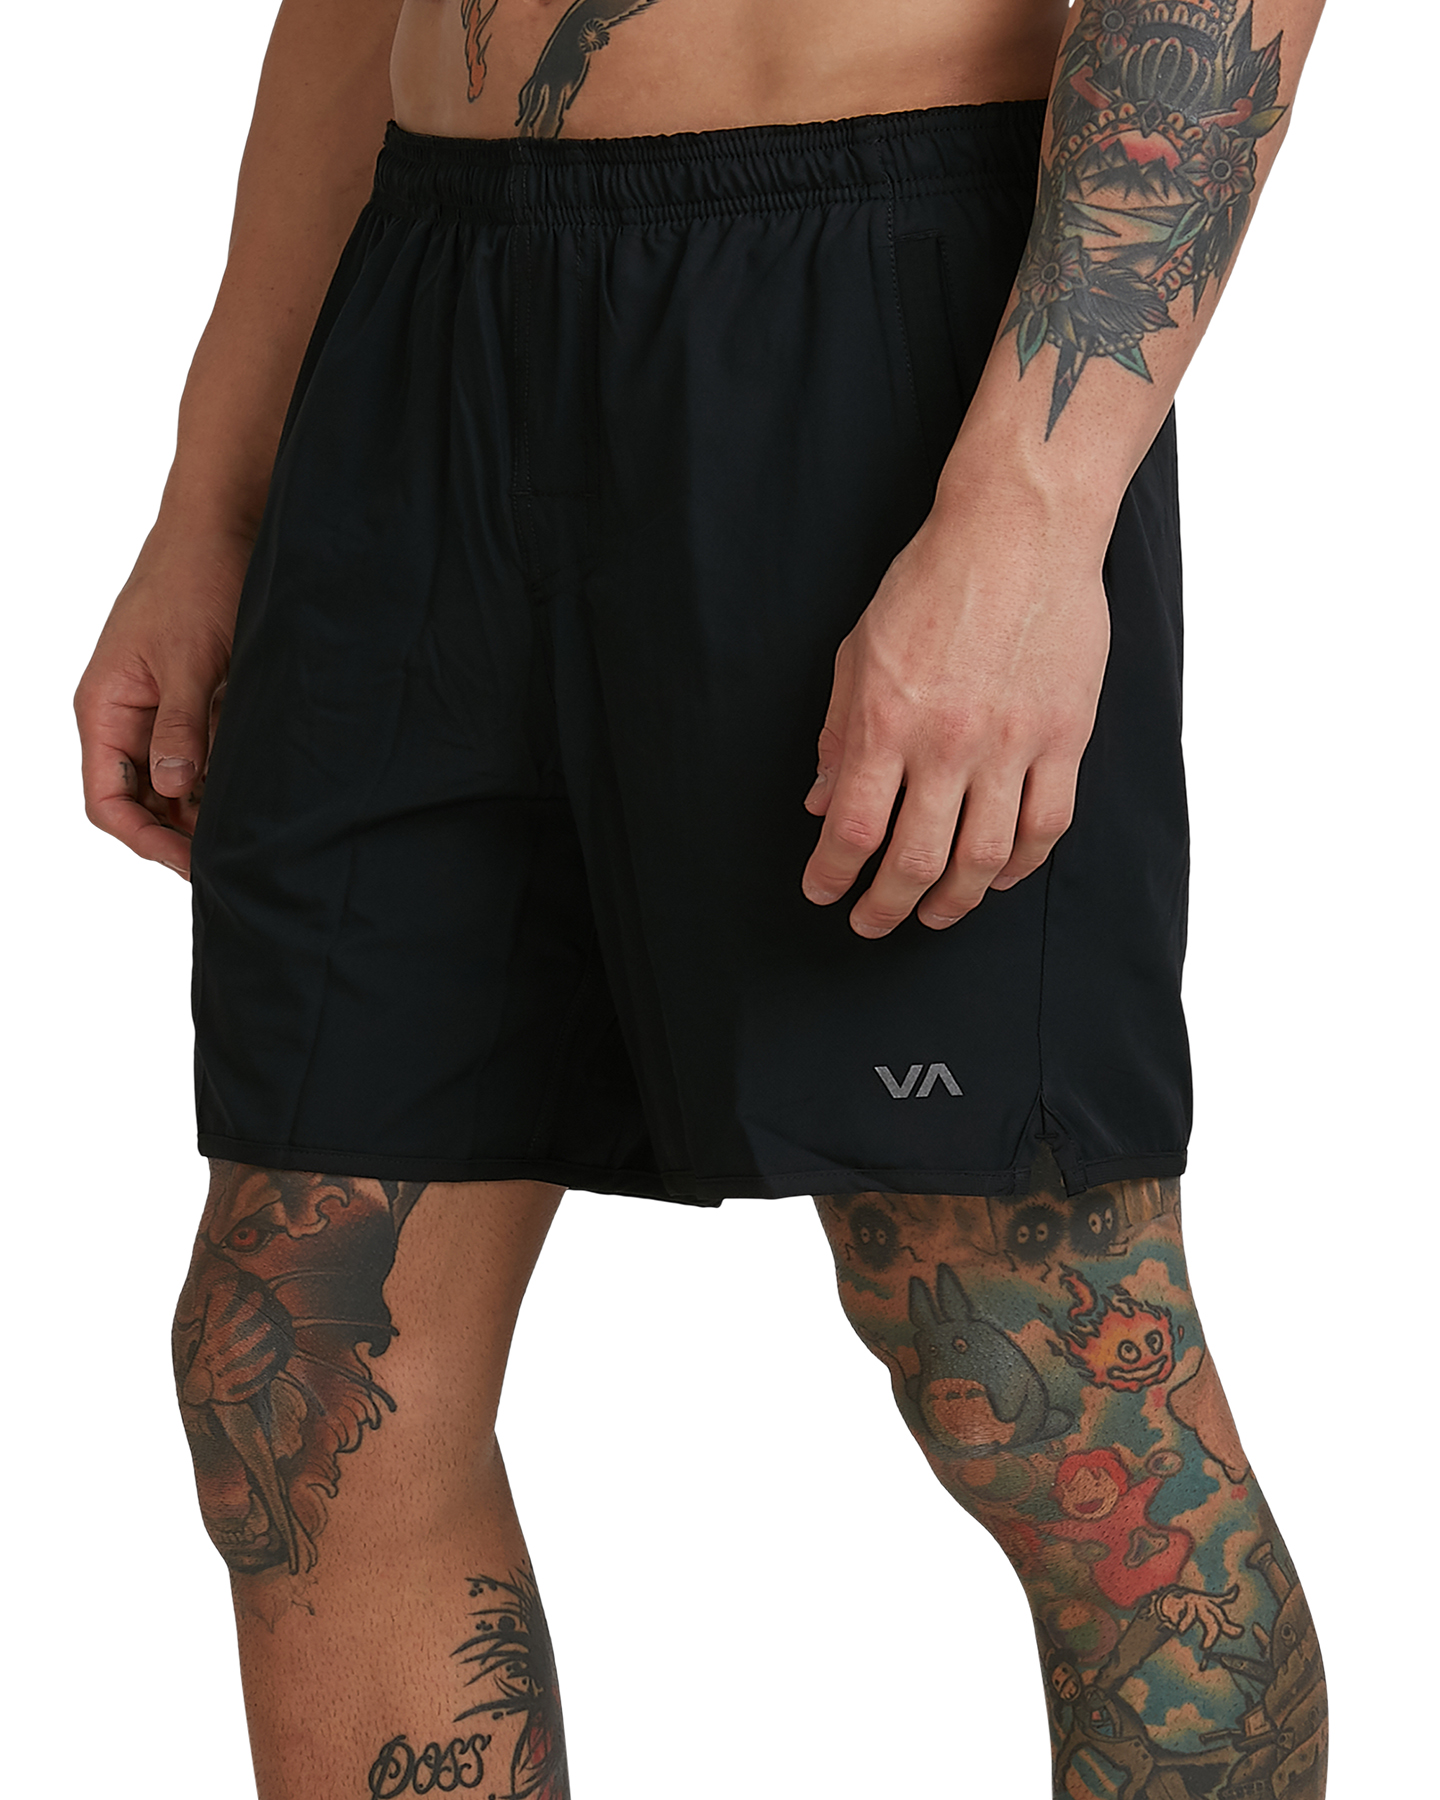 Rvca Yogger 2 In 1 Shorts - Black | SurfStitch